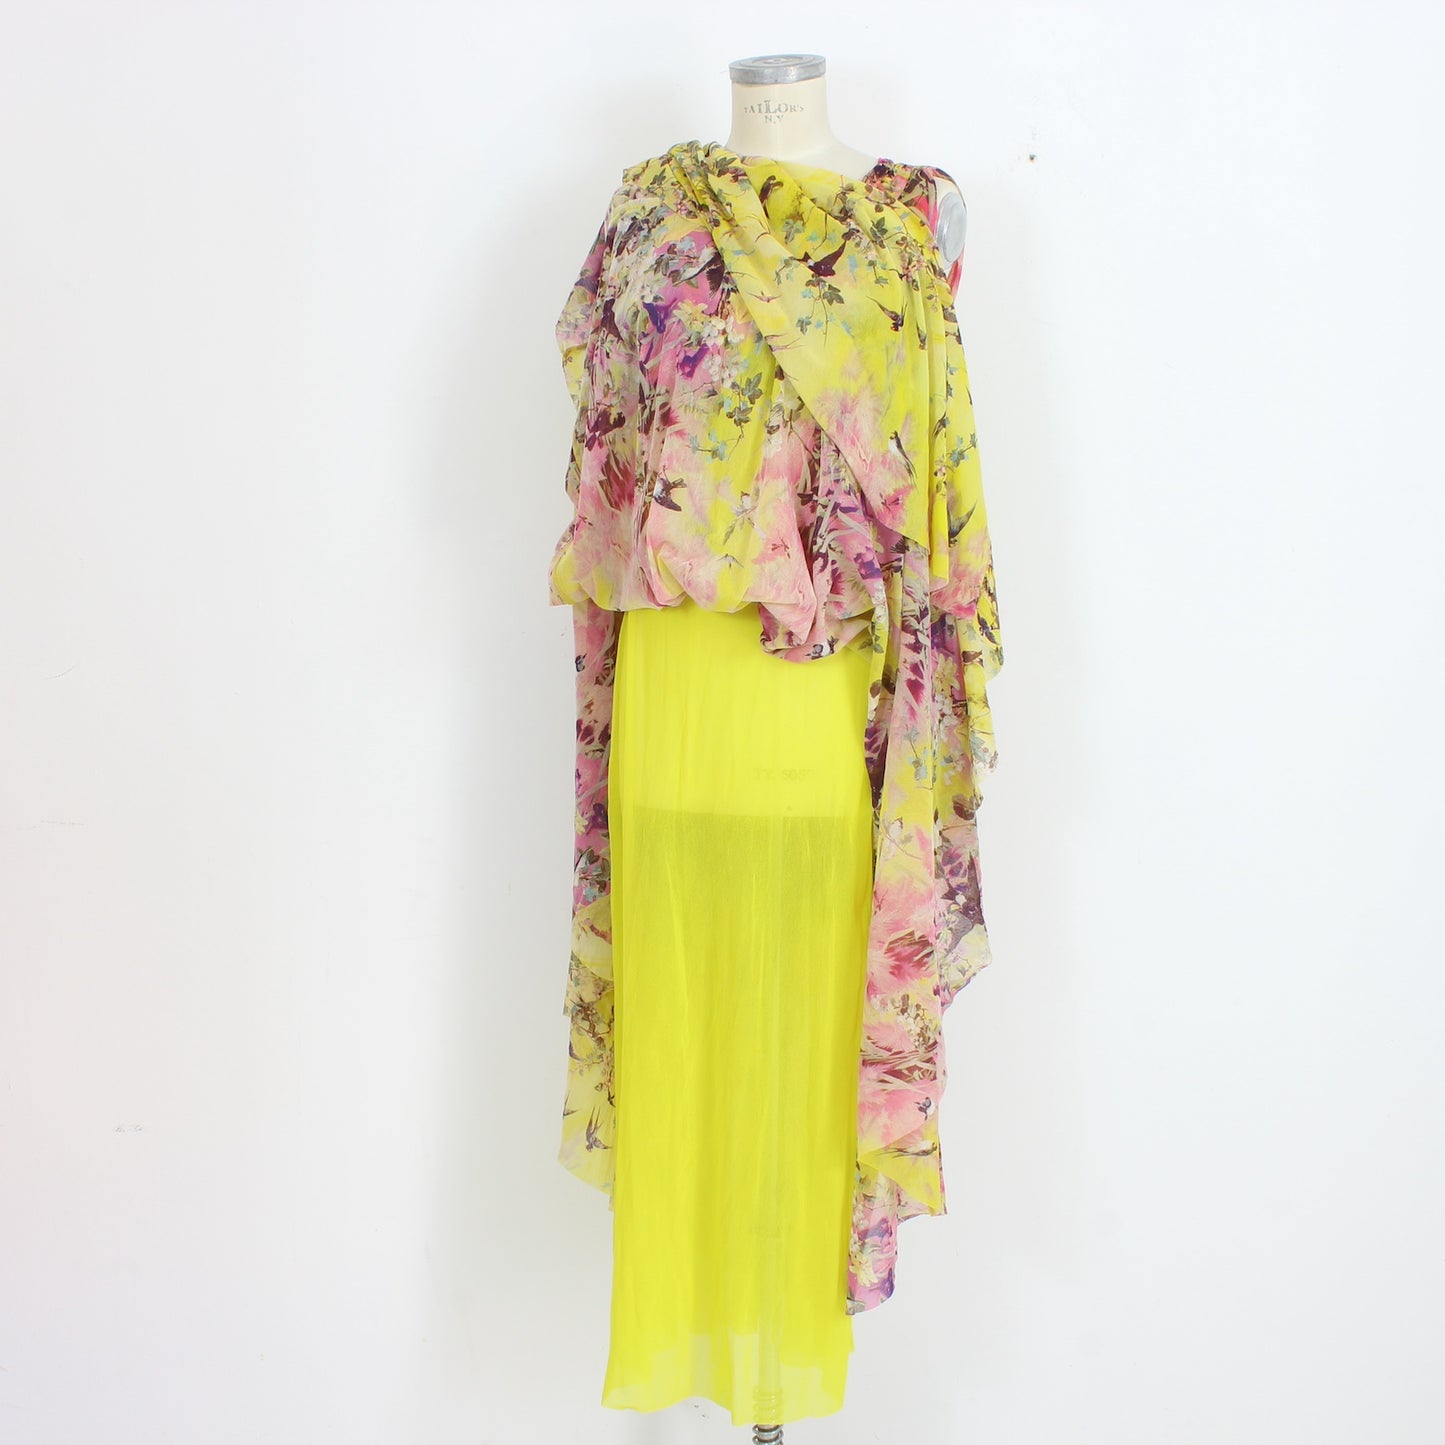 Jean Paul Gaultier Soleil Fuzzi Yellow Long Dress 2000s